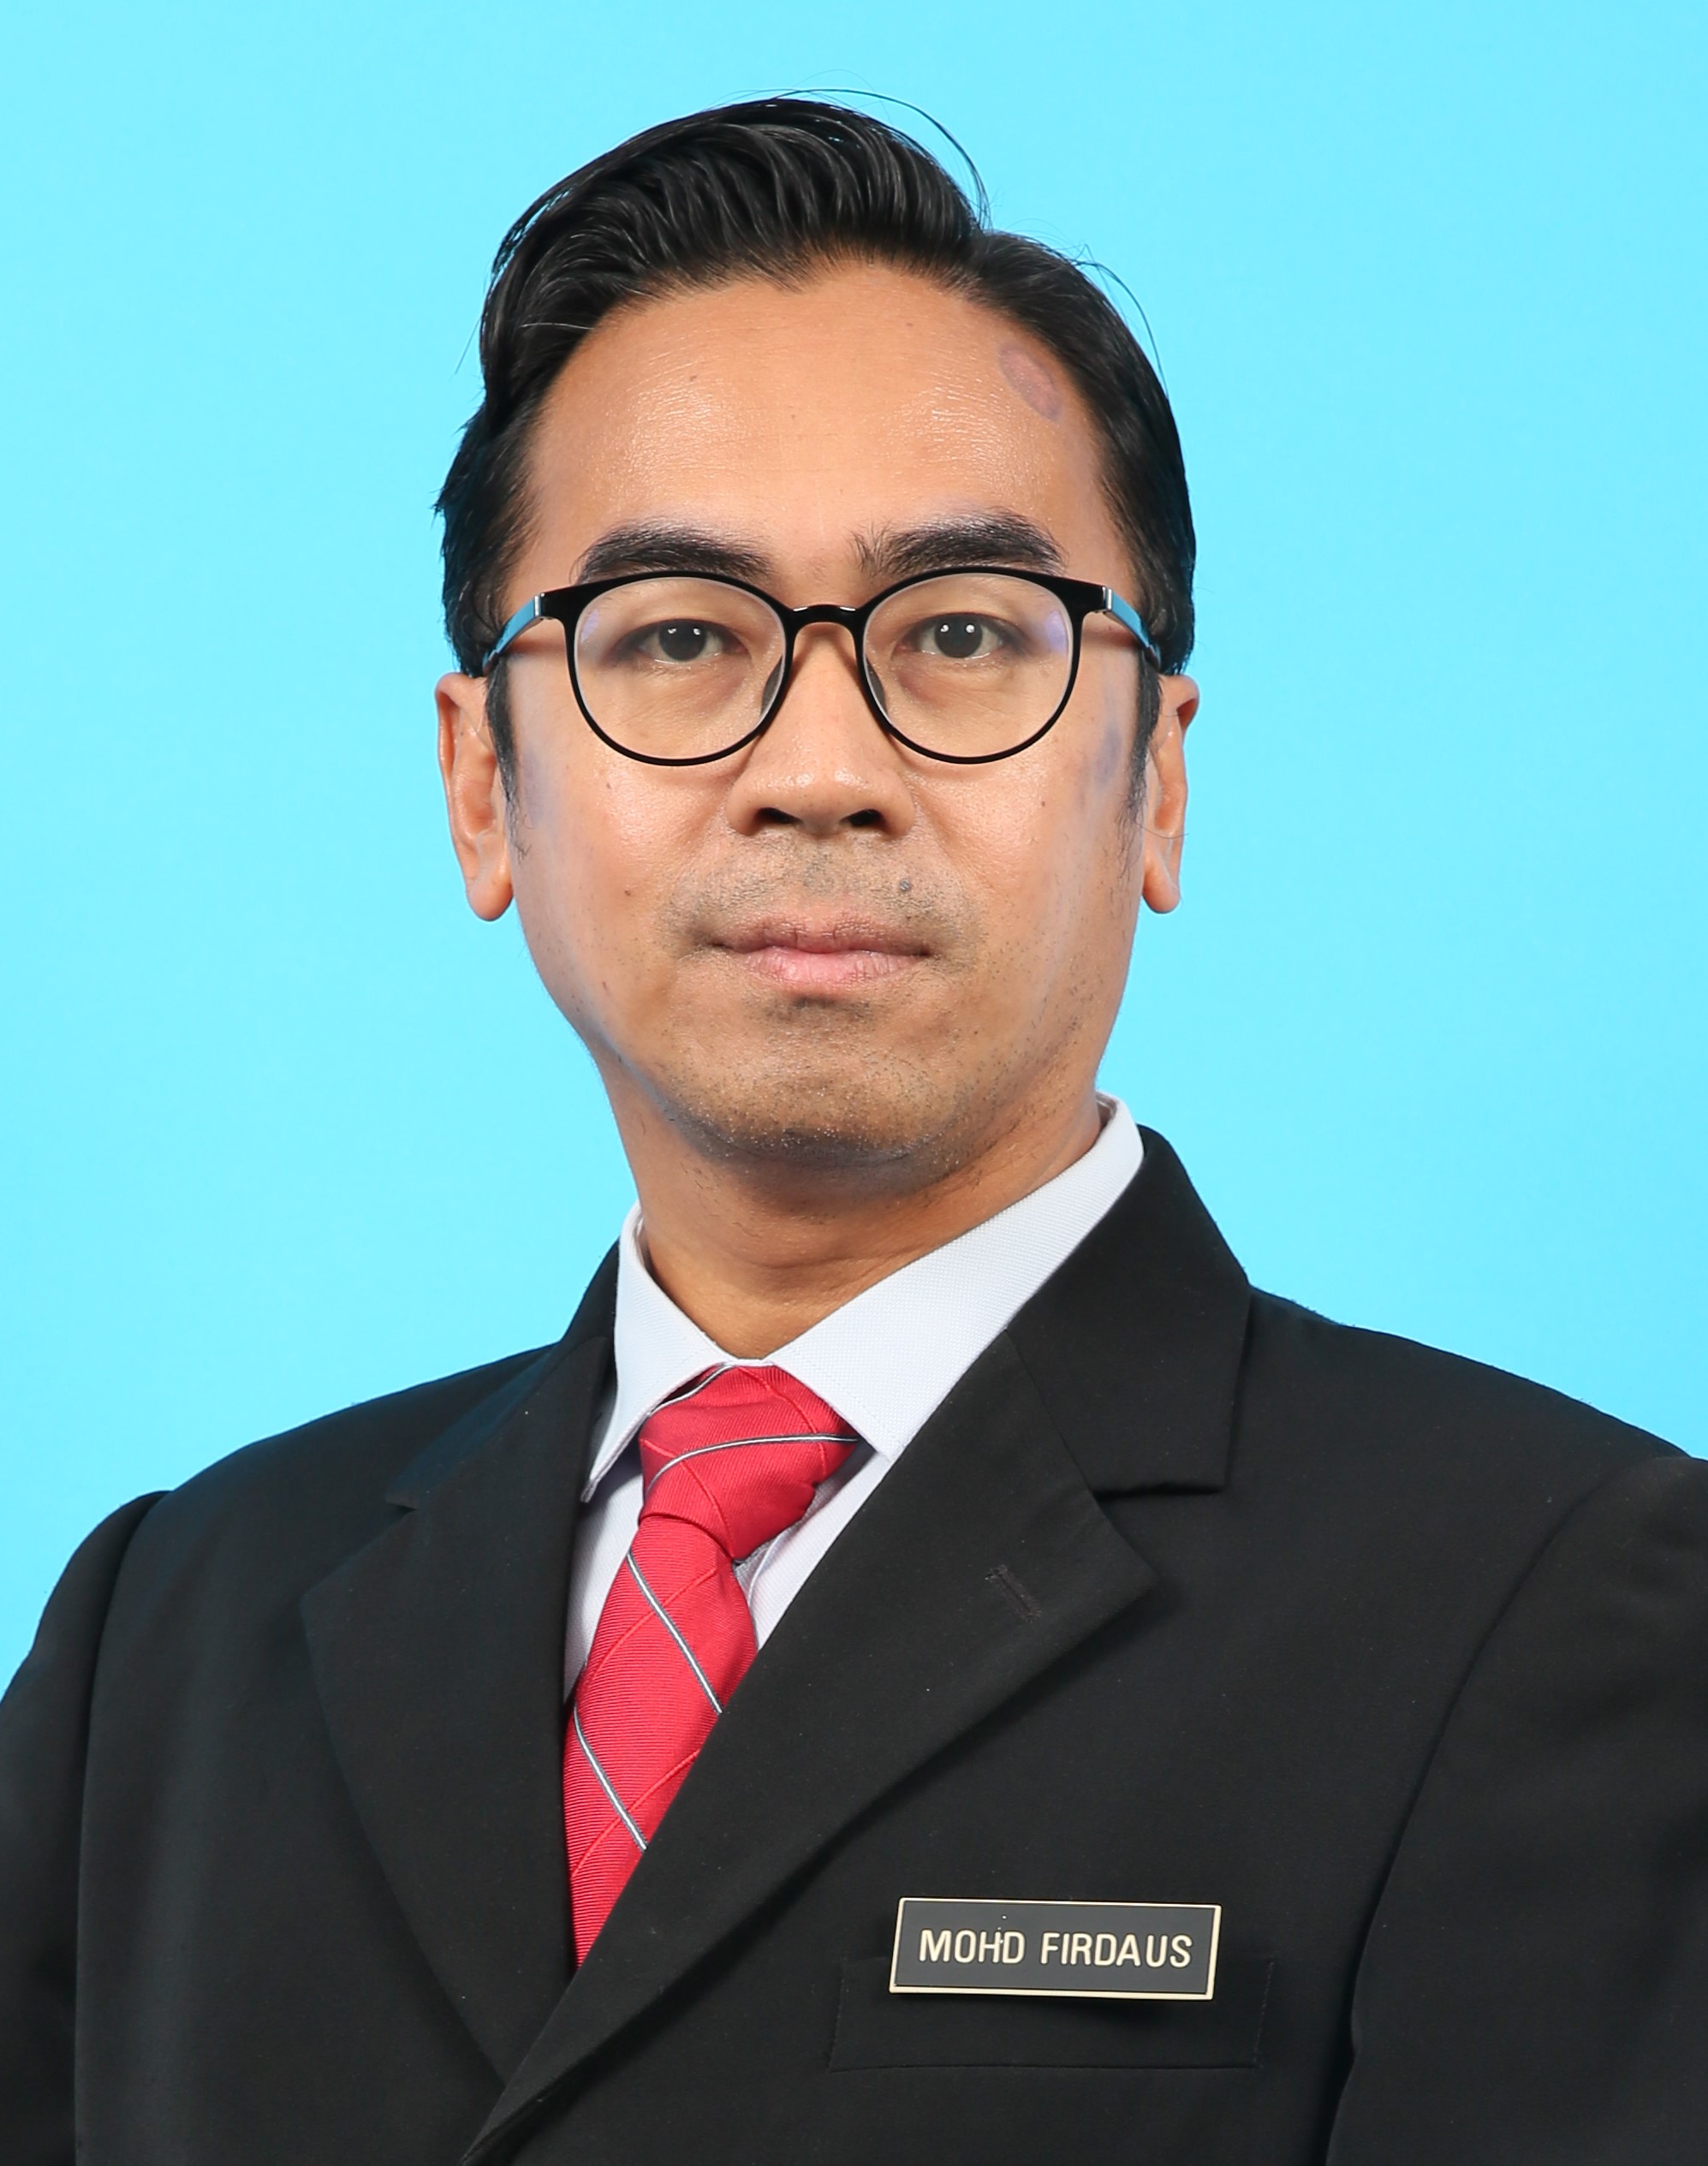 Mohd Firdaus Bin Mohd Arif